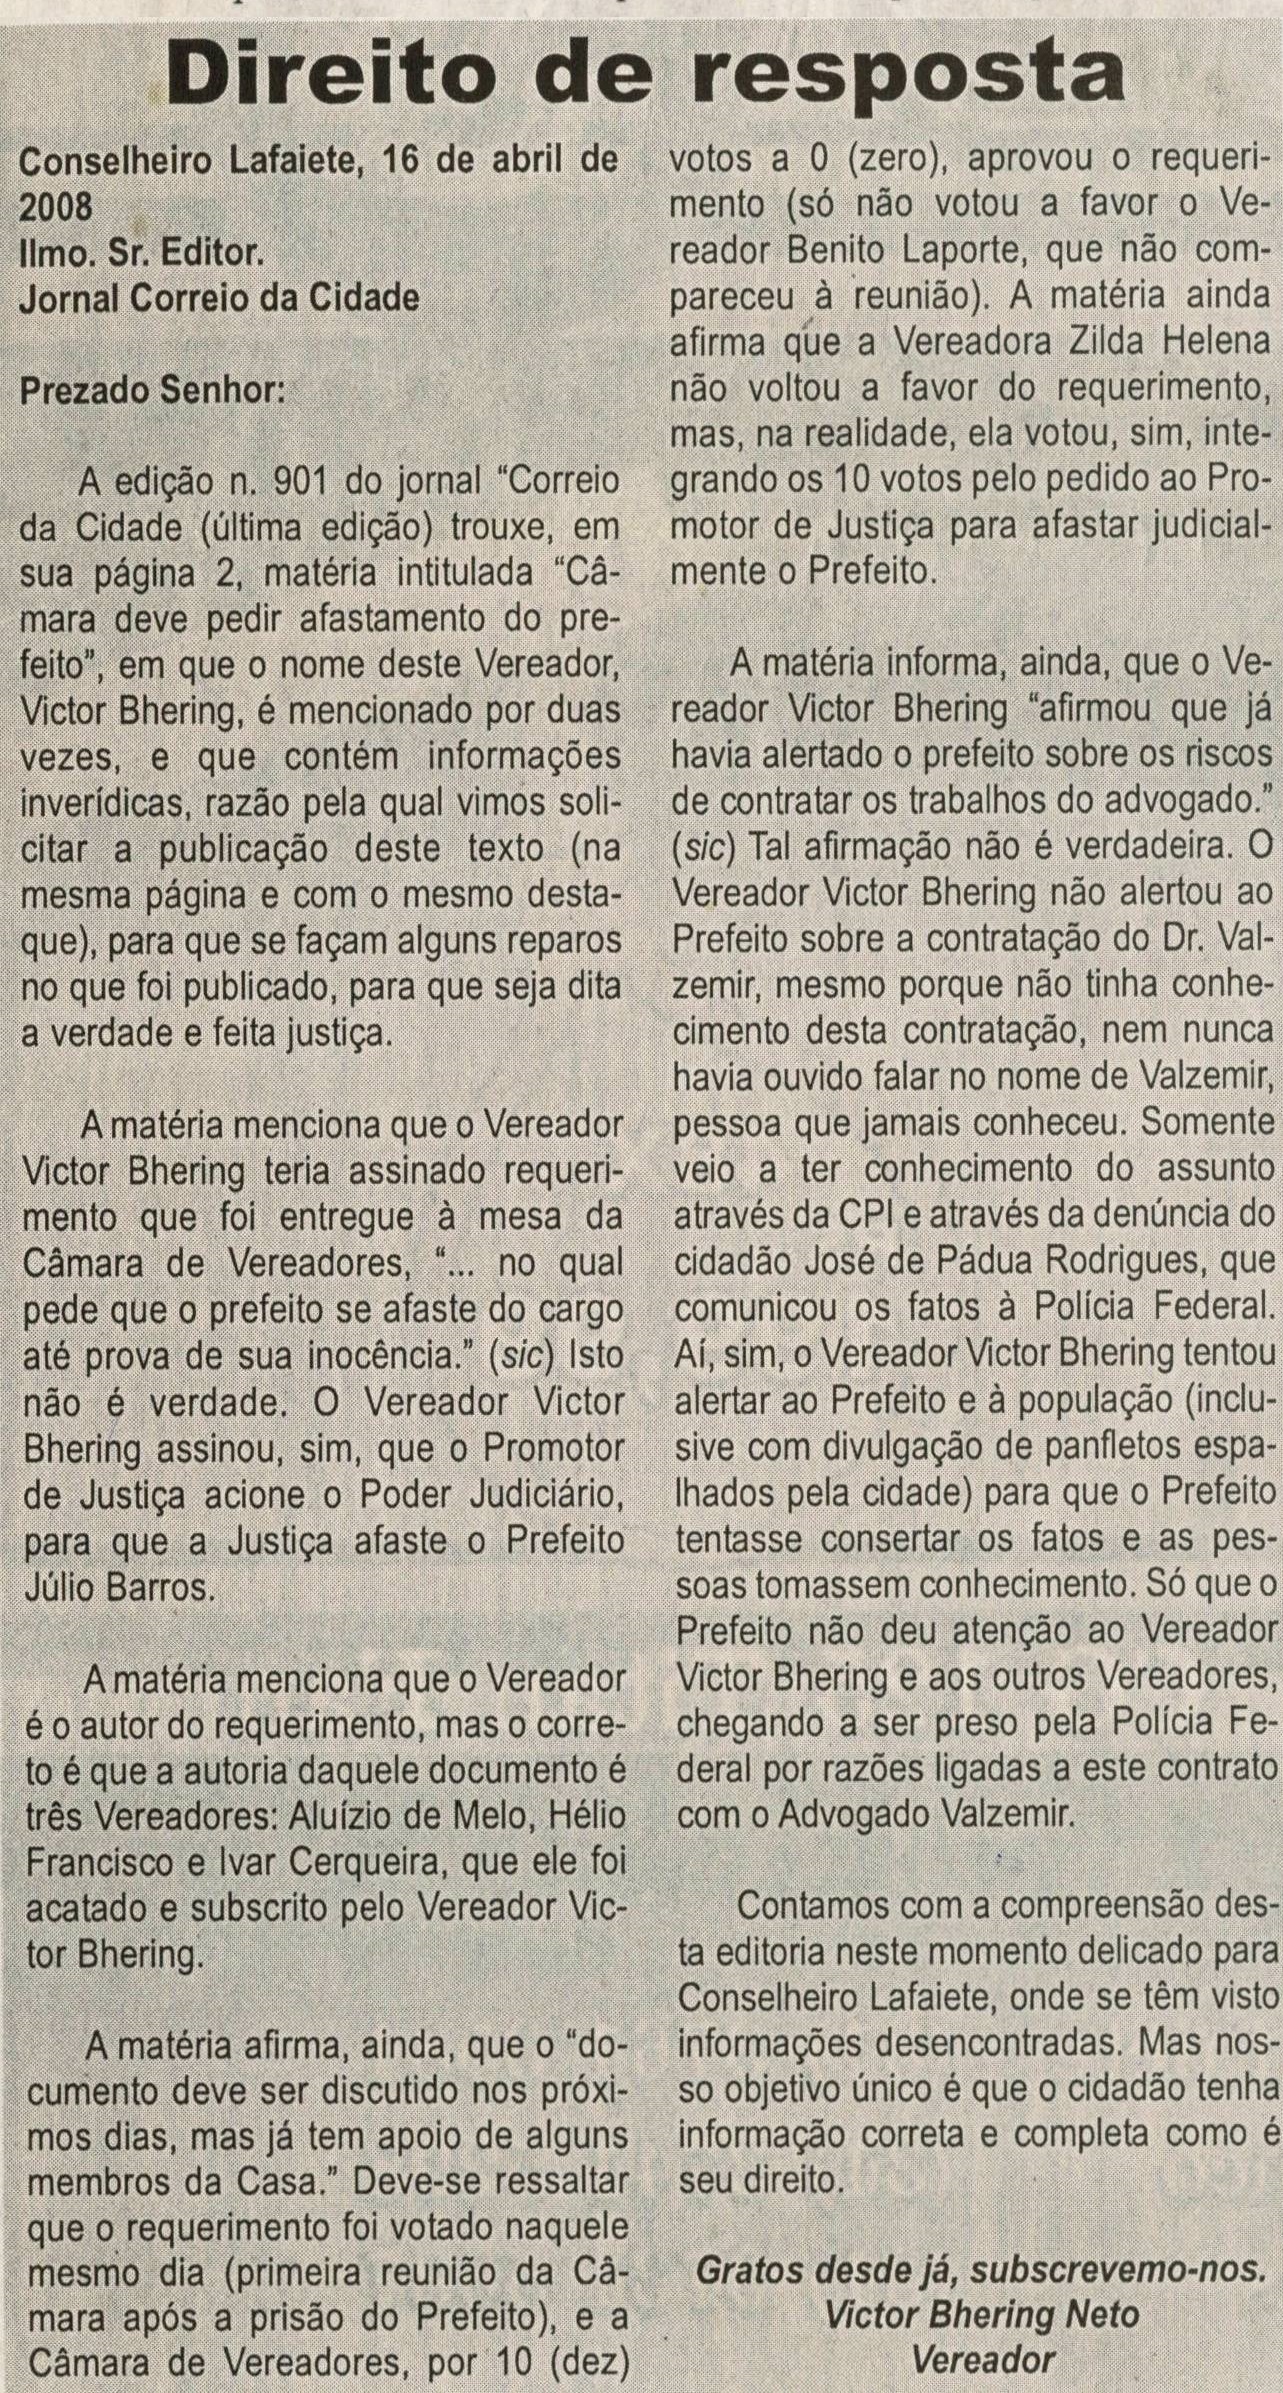 Direito de resposta. Jornal Correio da Cidade, Conselheiro Lafaiete, 19 abr. 2008, p. 04.